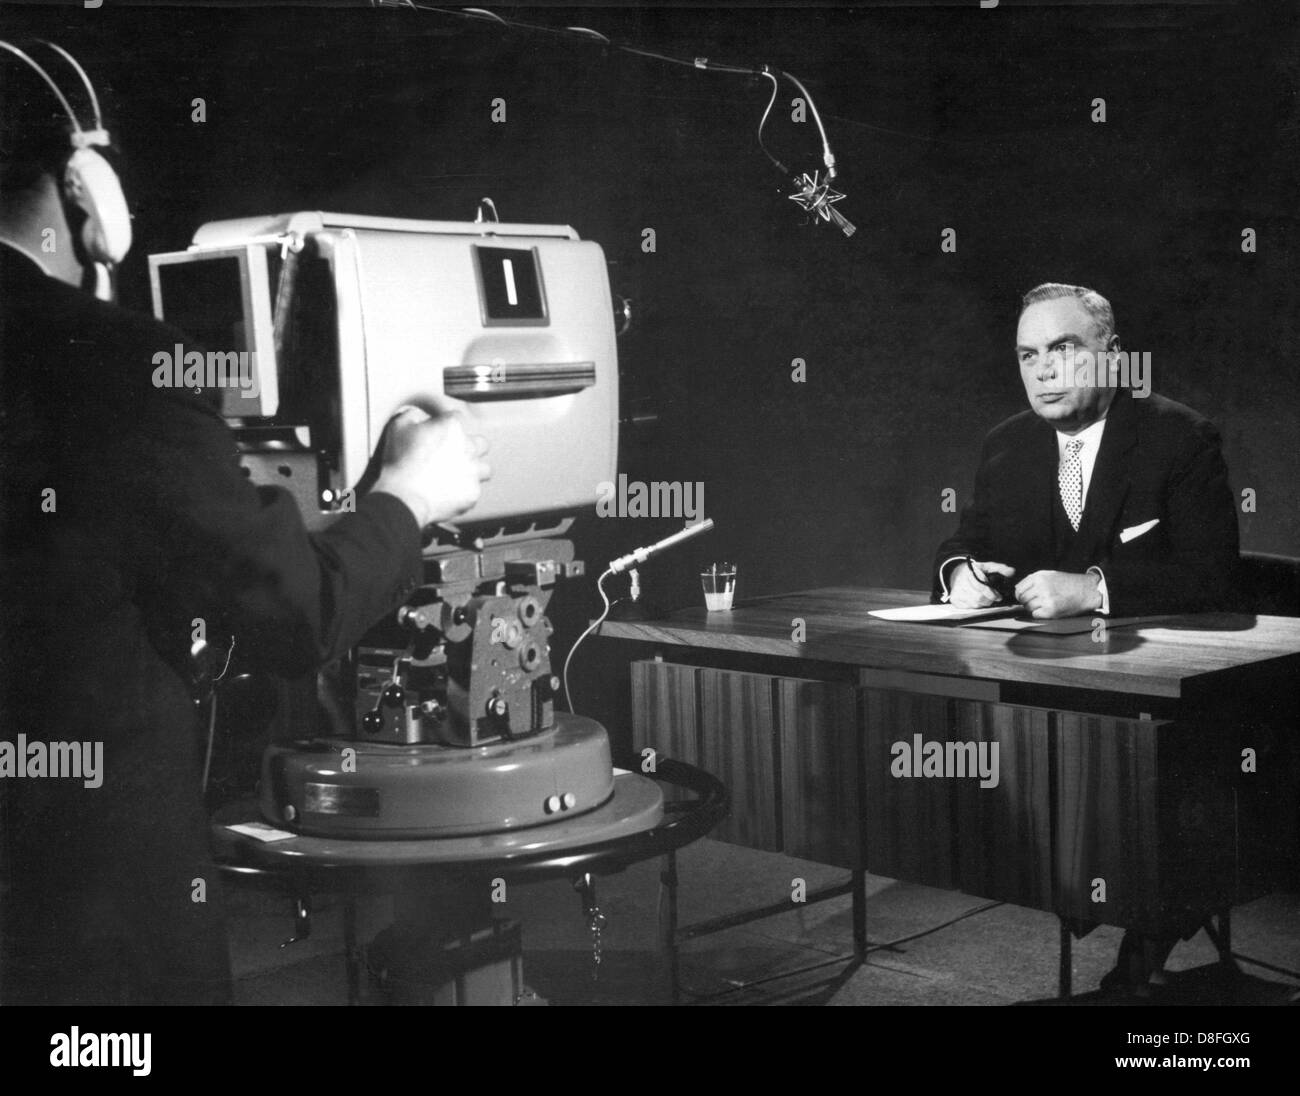 Directeur de la ZDF le Professeur Karl Holzamer prononce un discours au début de la diffusion. L 'Zweites Deutsches Fernsehen', la deuxième chaîne de télévision allemande ZDF, ou son programme a débuté le 1er avril en 1963. Banque D'Images